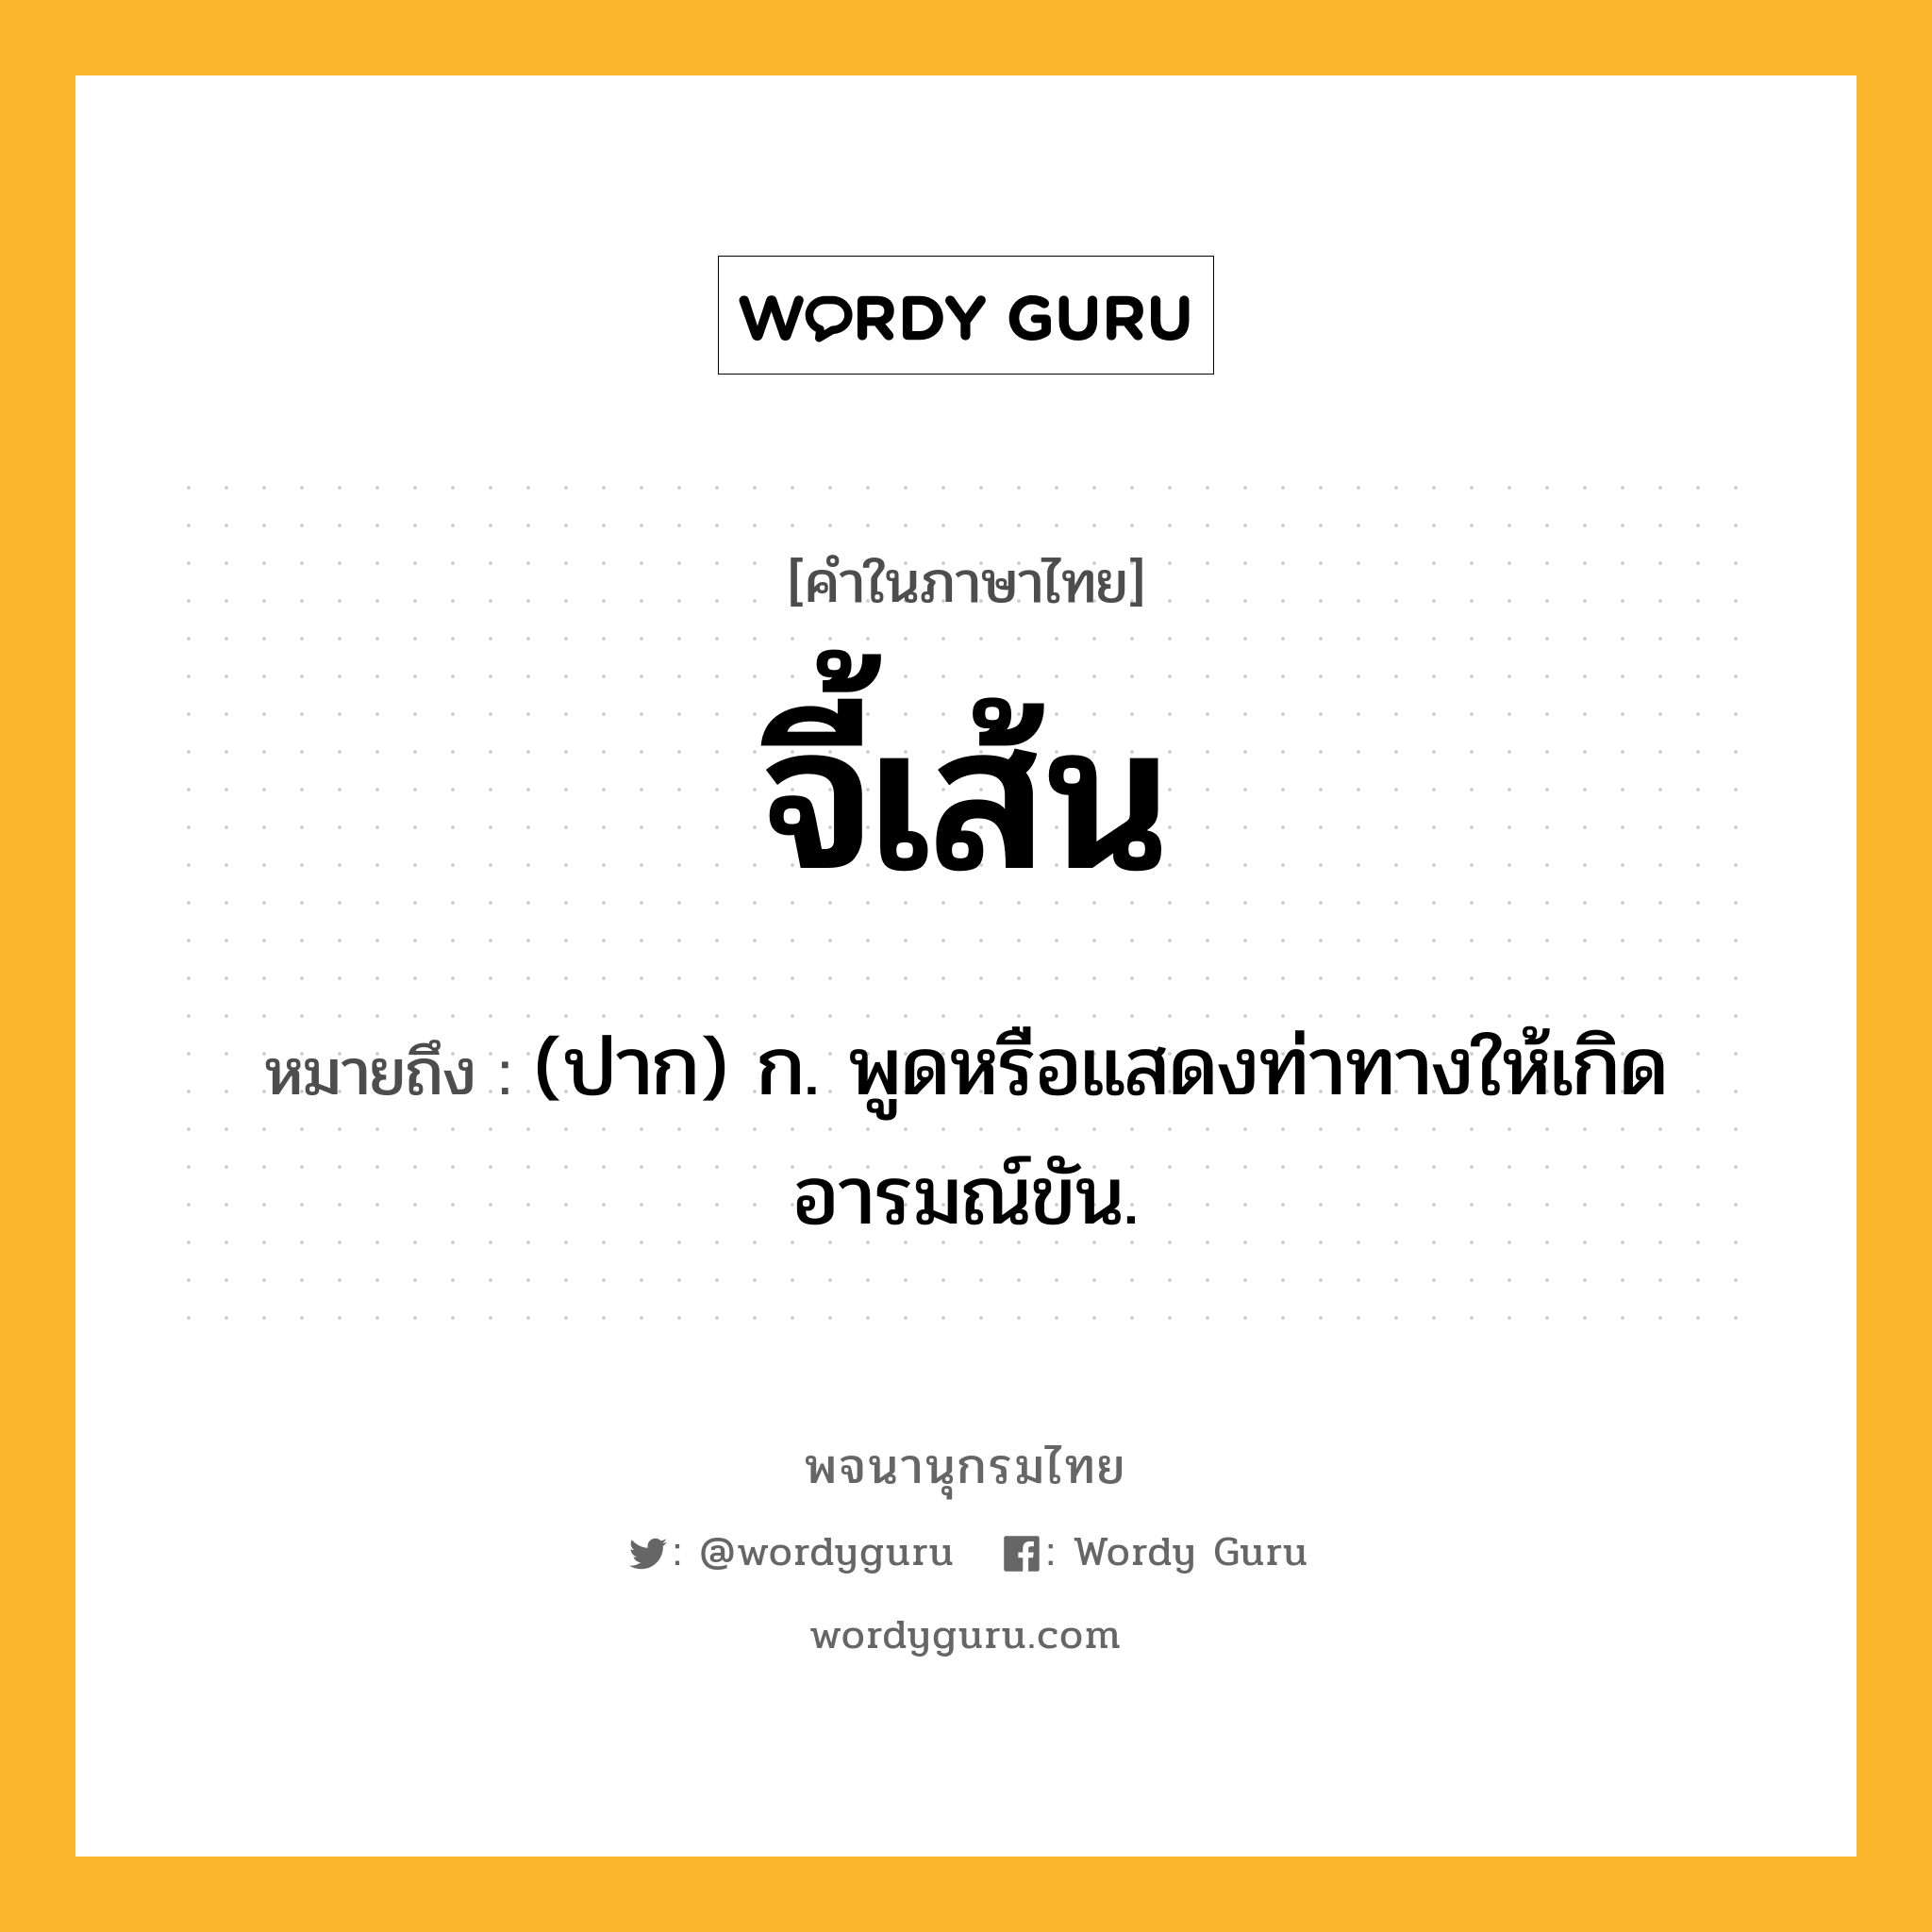 จี้เส้น ความหมาย หมายถึงอะไร?, คำในภาษาไทย จี้เส้น หมายถึง (ปาก) ก. พูดหรือแสดงท่าทางให้เกิดอารมณ์ขัน.